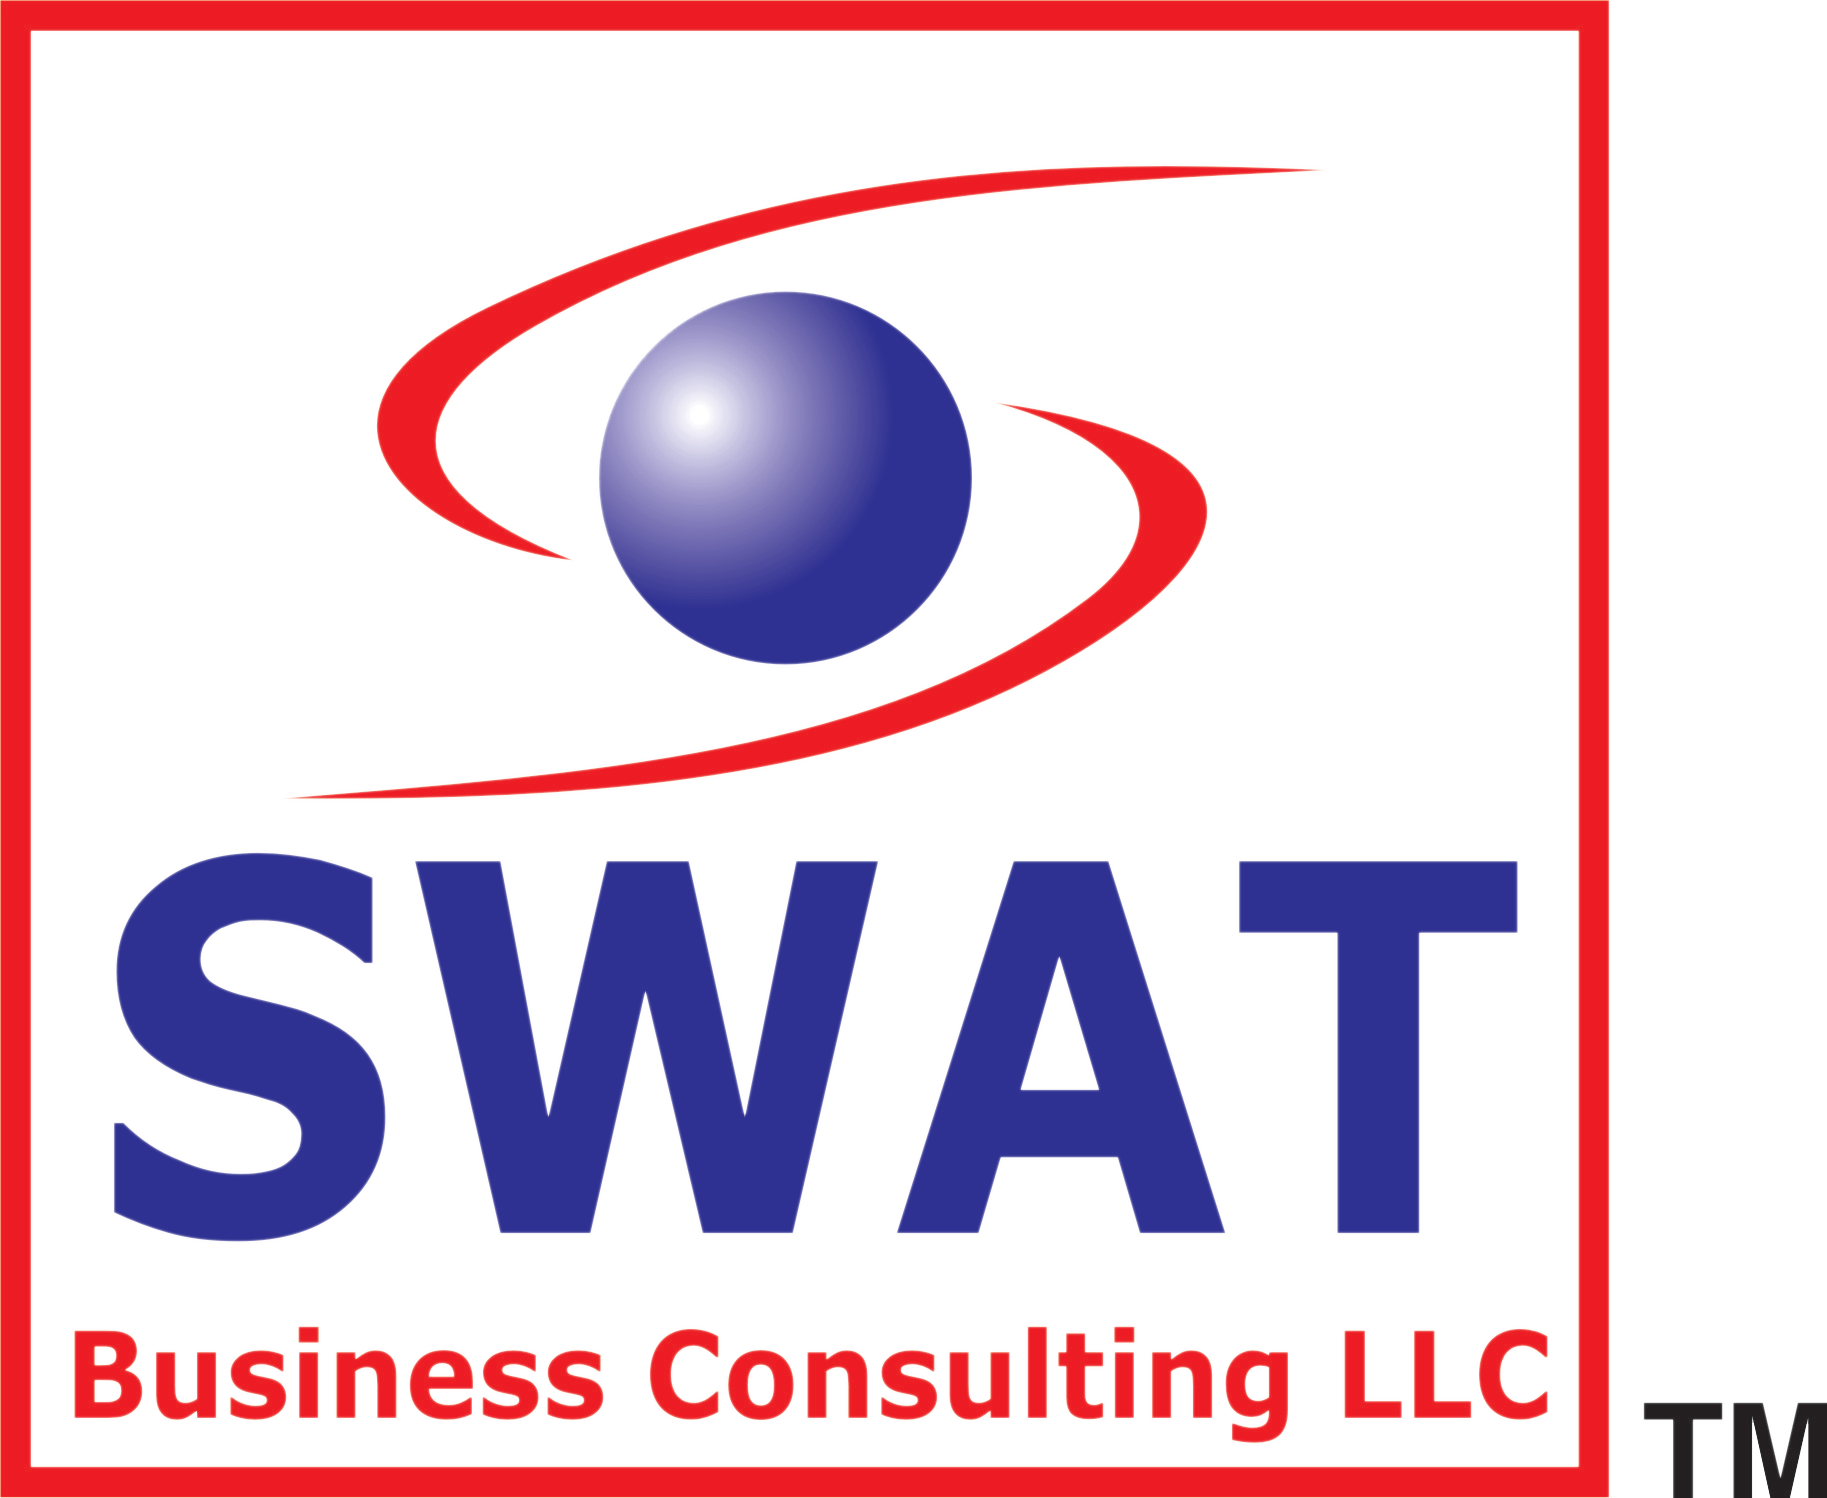 Swatbusiness Consulting LLC